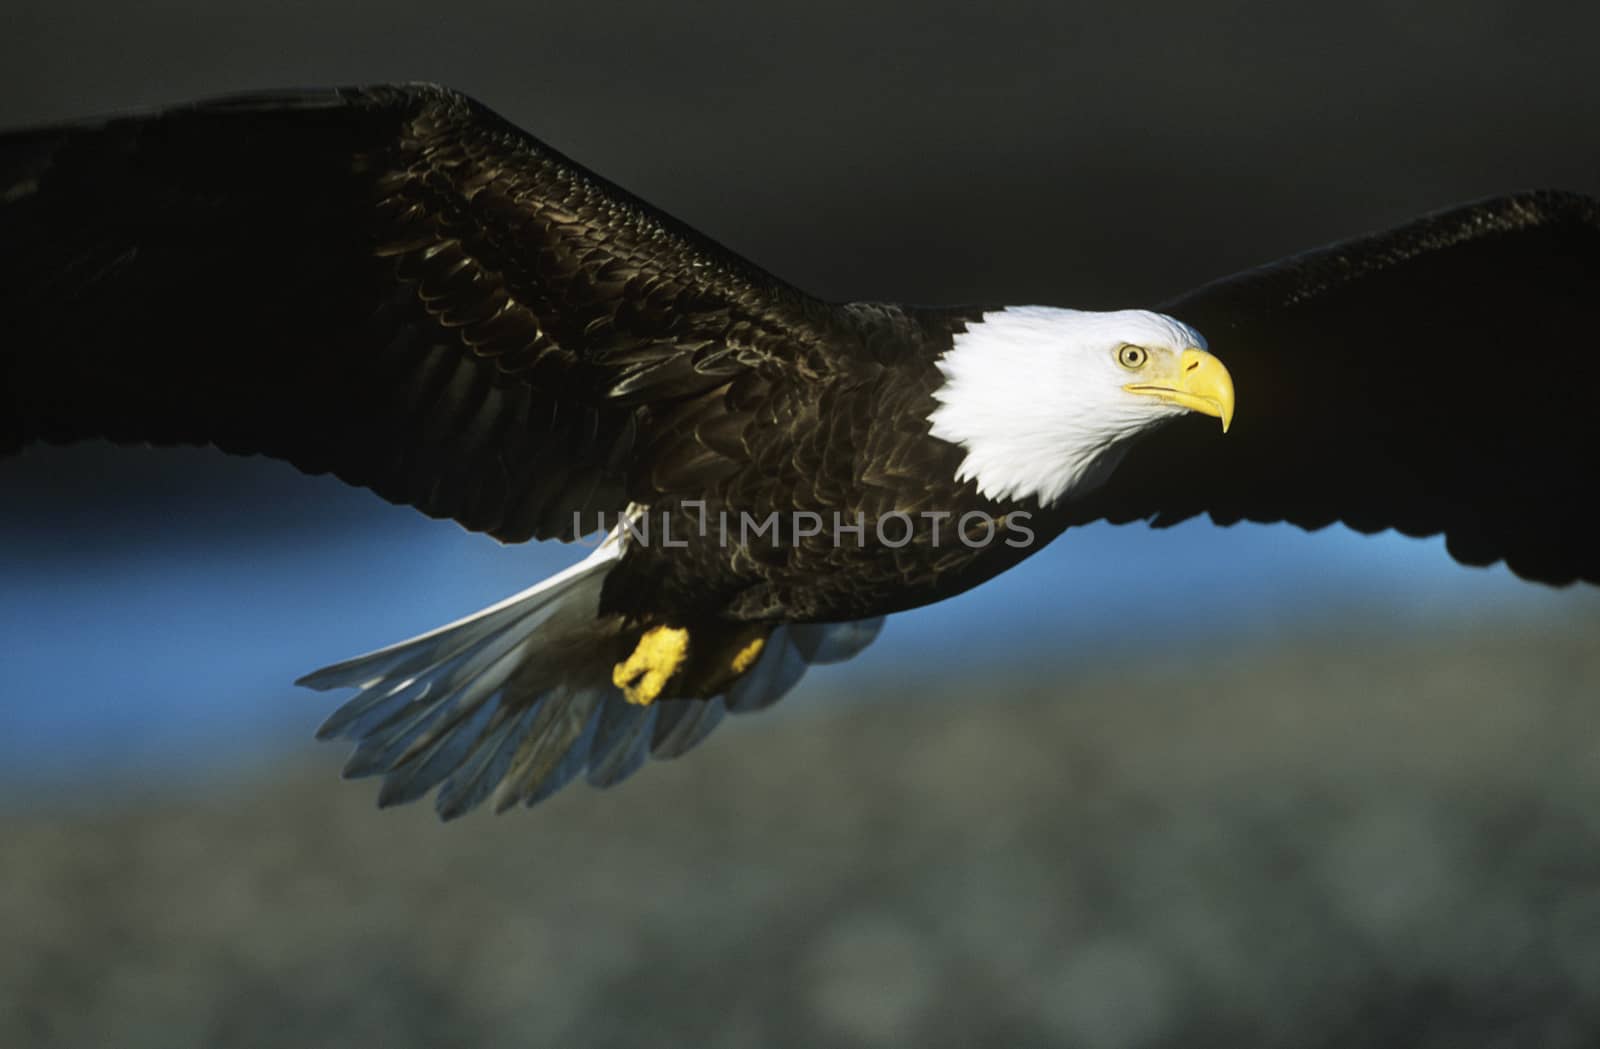 Bald eagle in flight by Jaanaaa